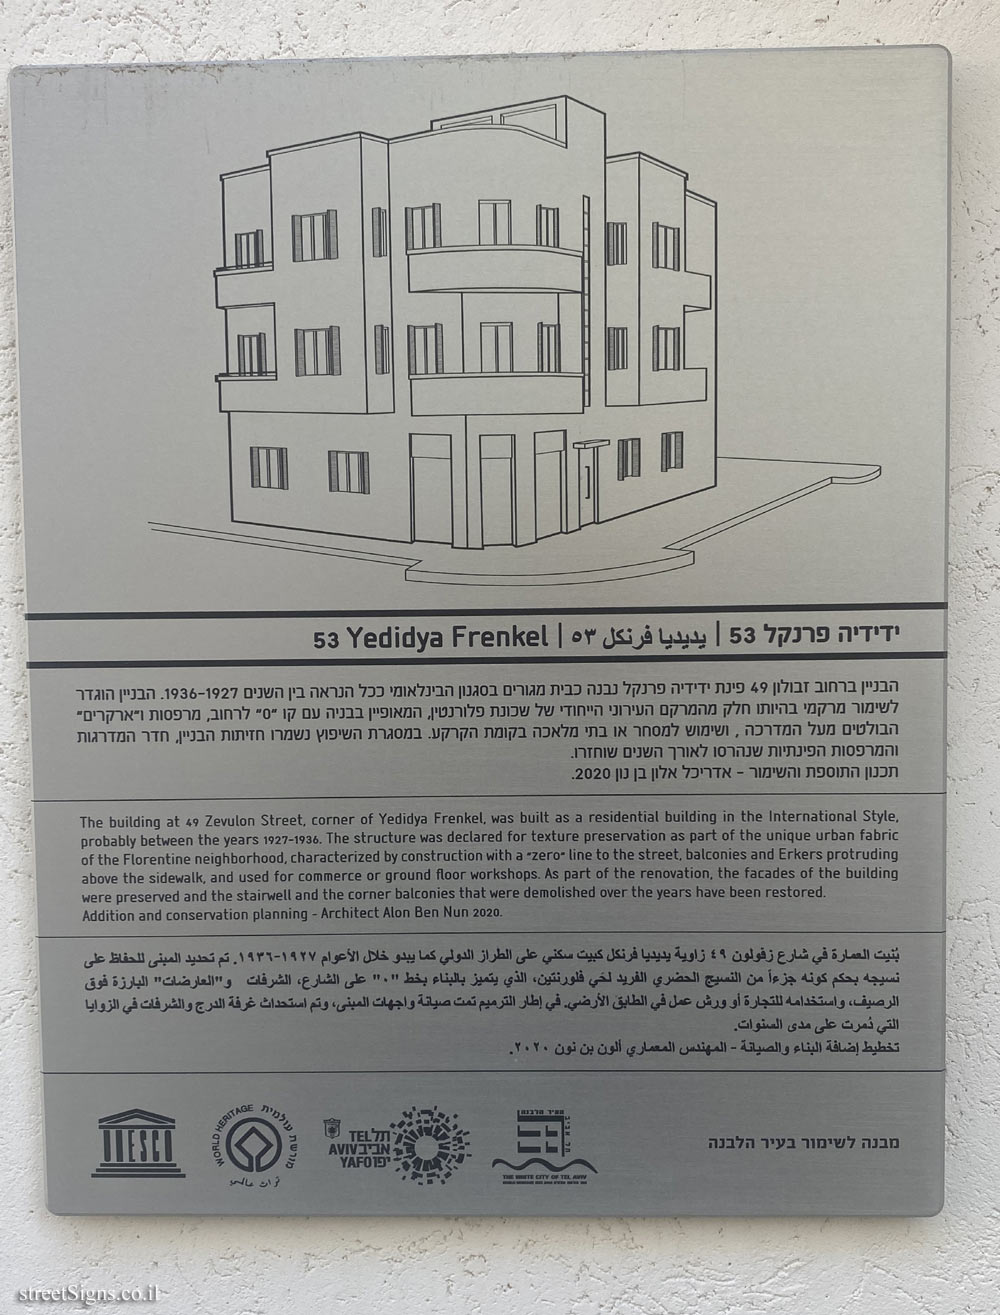 Tel Aviv - buildings for conservation - 53 Yedidya Frenkel